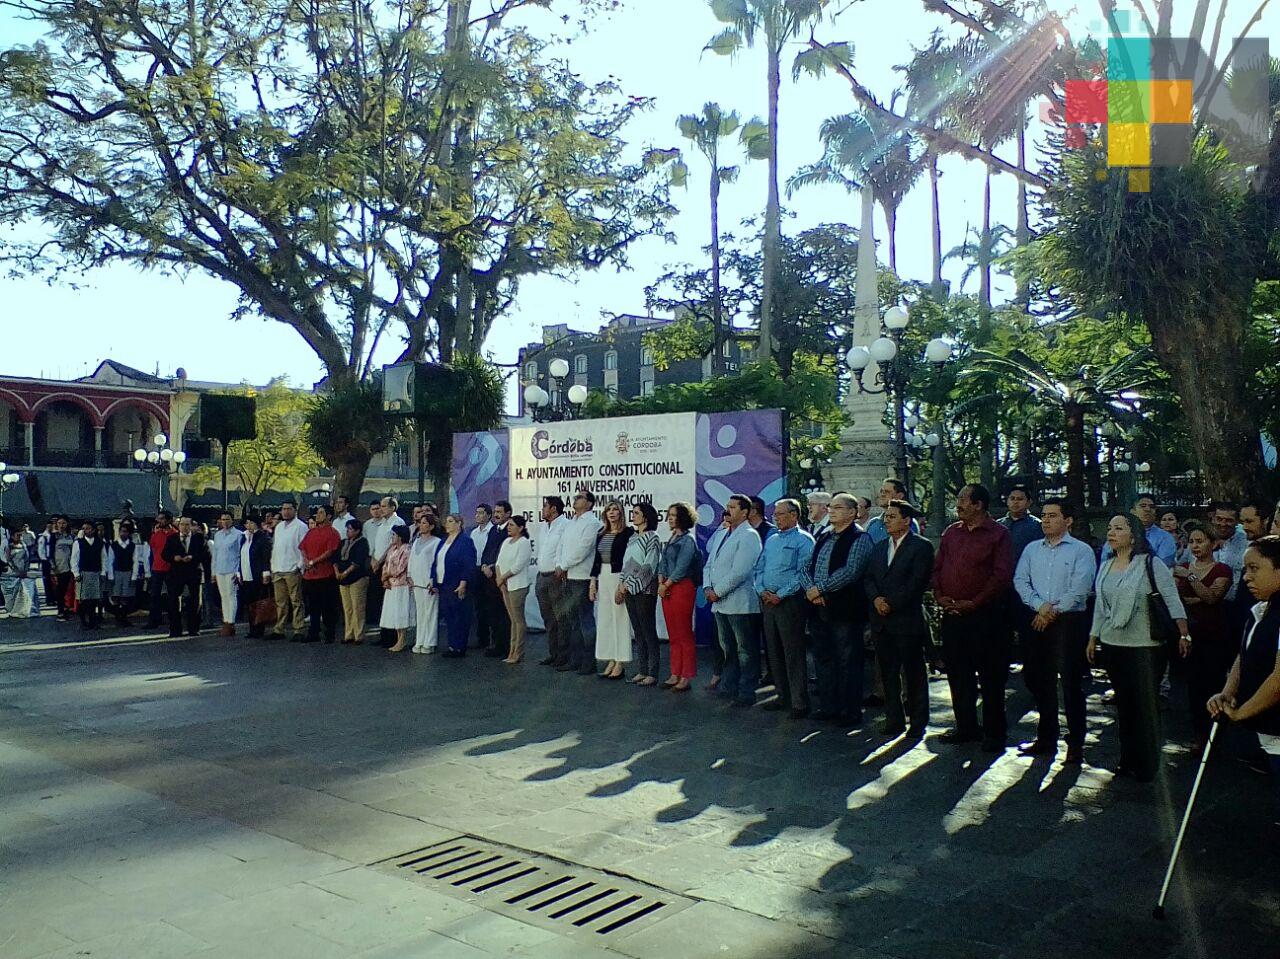 En Córdoba realizan acto cívico por el aniversario 101 de la Constitución de 1917